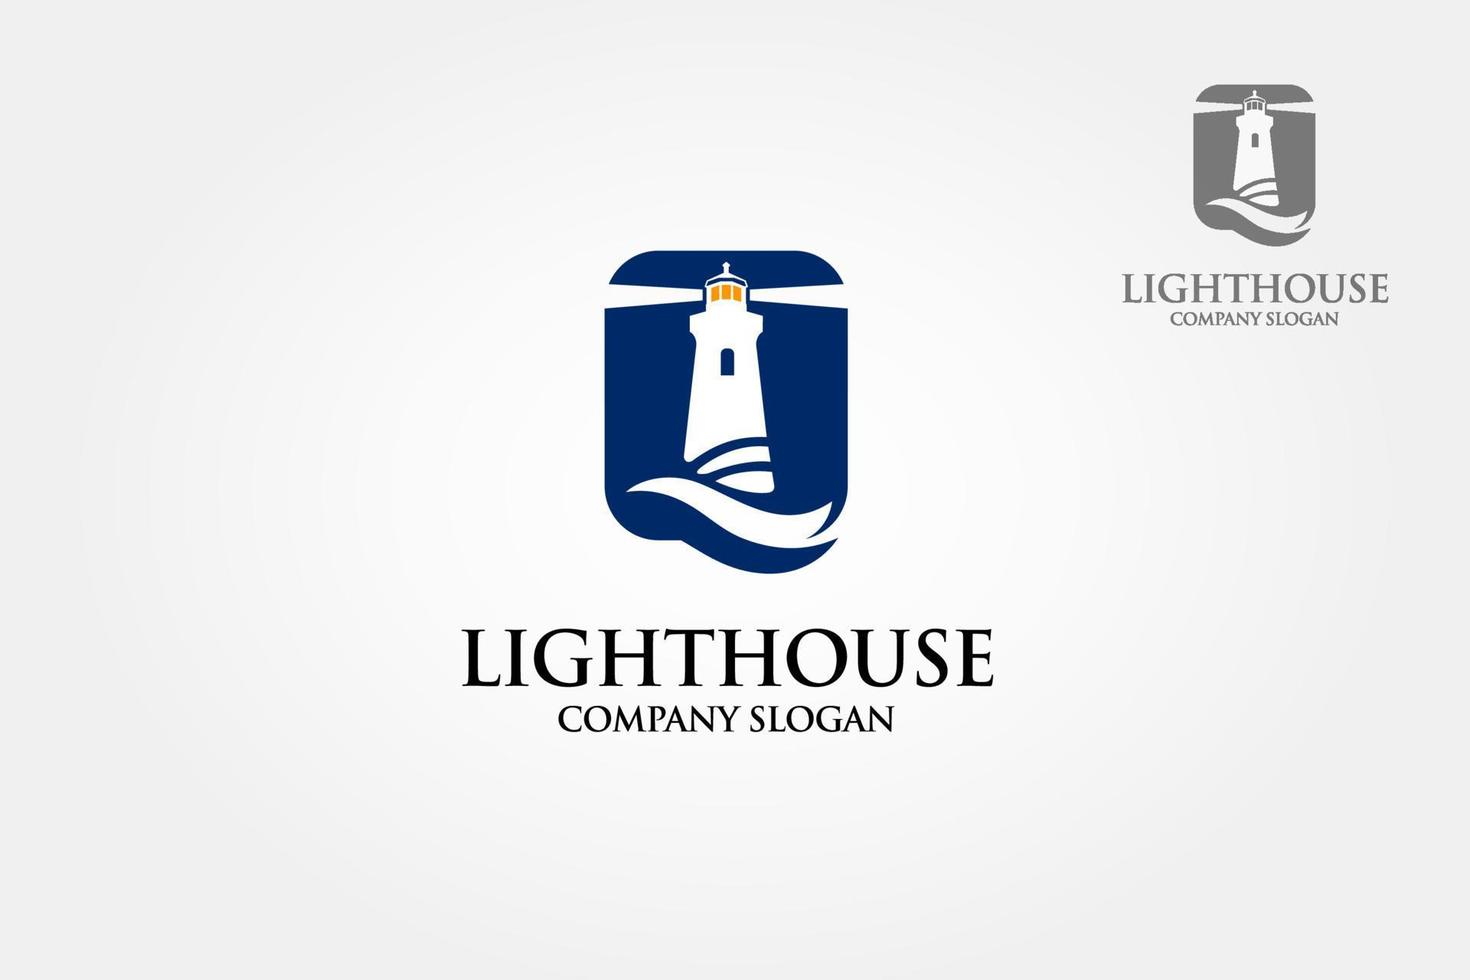 modèle de logo vectoriel de maison lumineuse. un logo propre, simple, net et professionnel, adapté aux cabinets de conseil, aux cabinets informatiques, aux entreprises, etc.